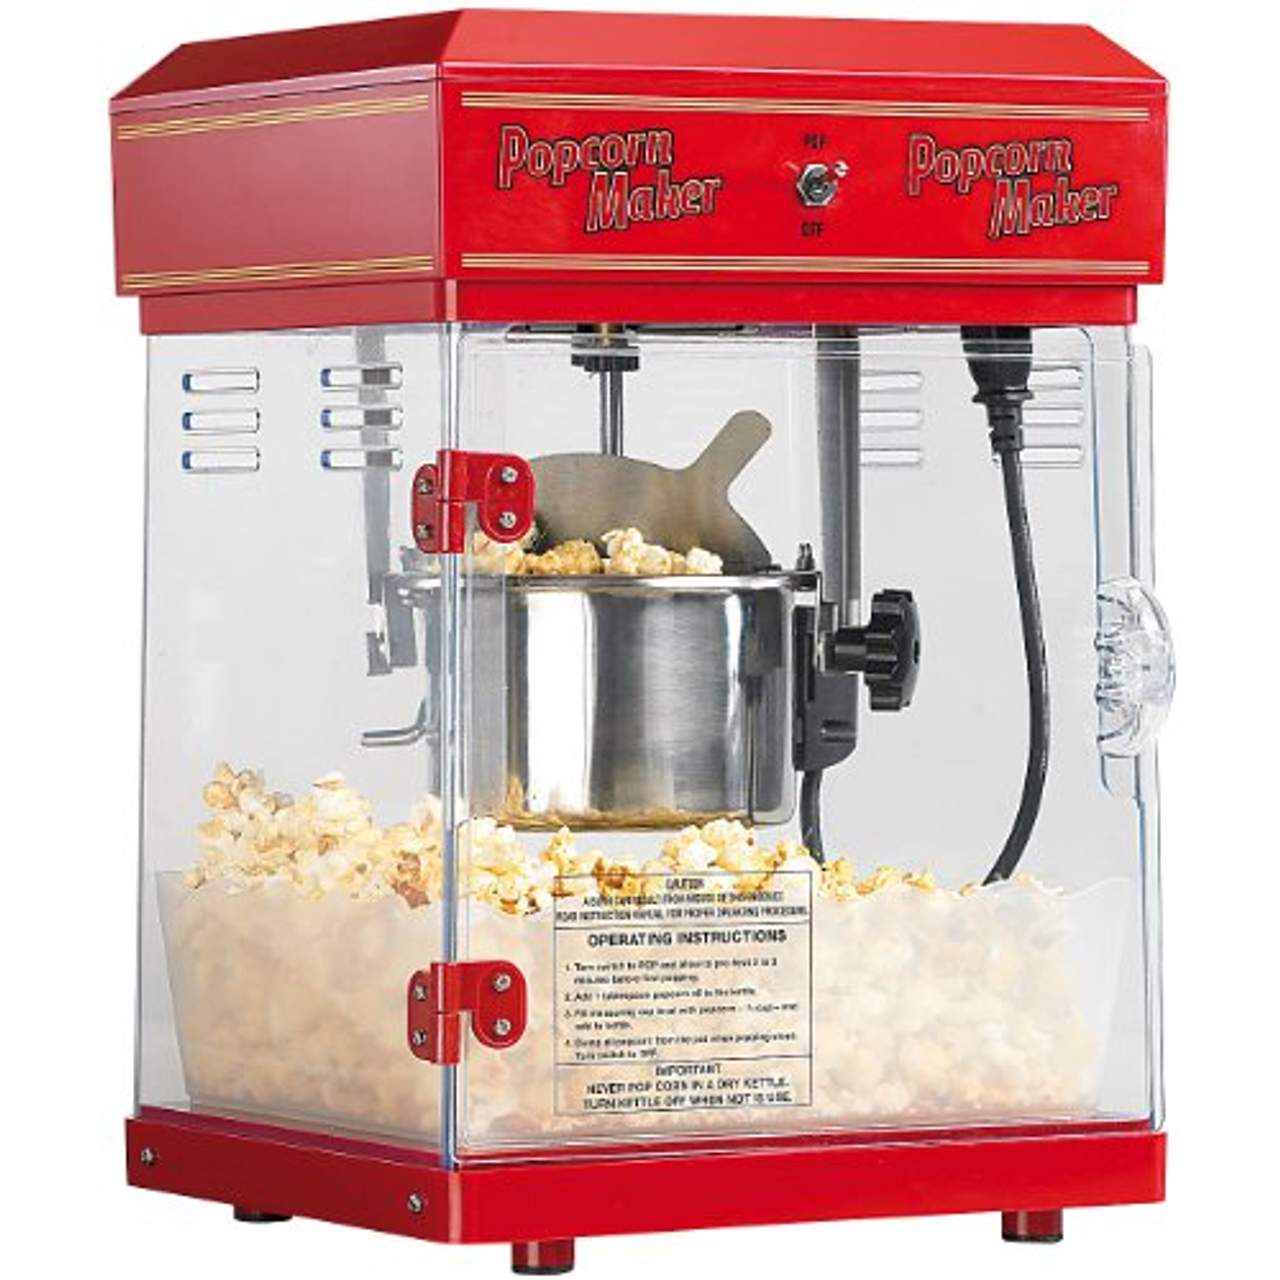 Popcornmaschine Popcornmaker Popcornautomat Popcorn Maker 1200W Kino Heißluft DE 